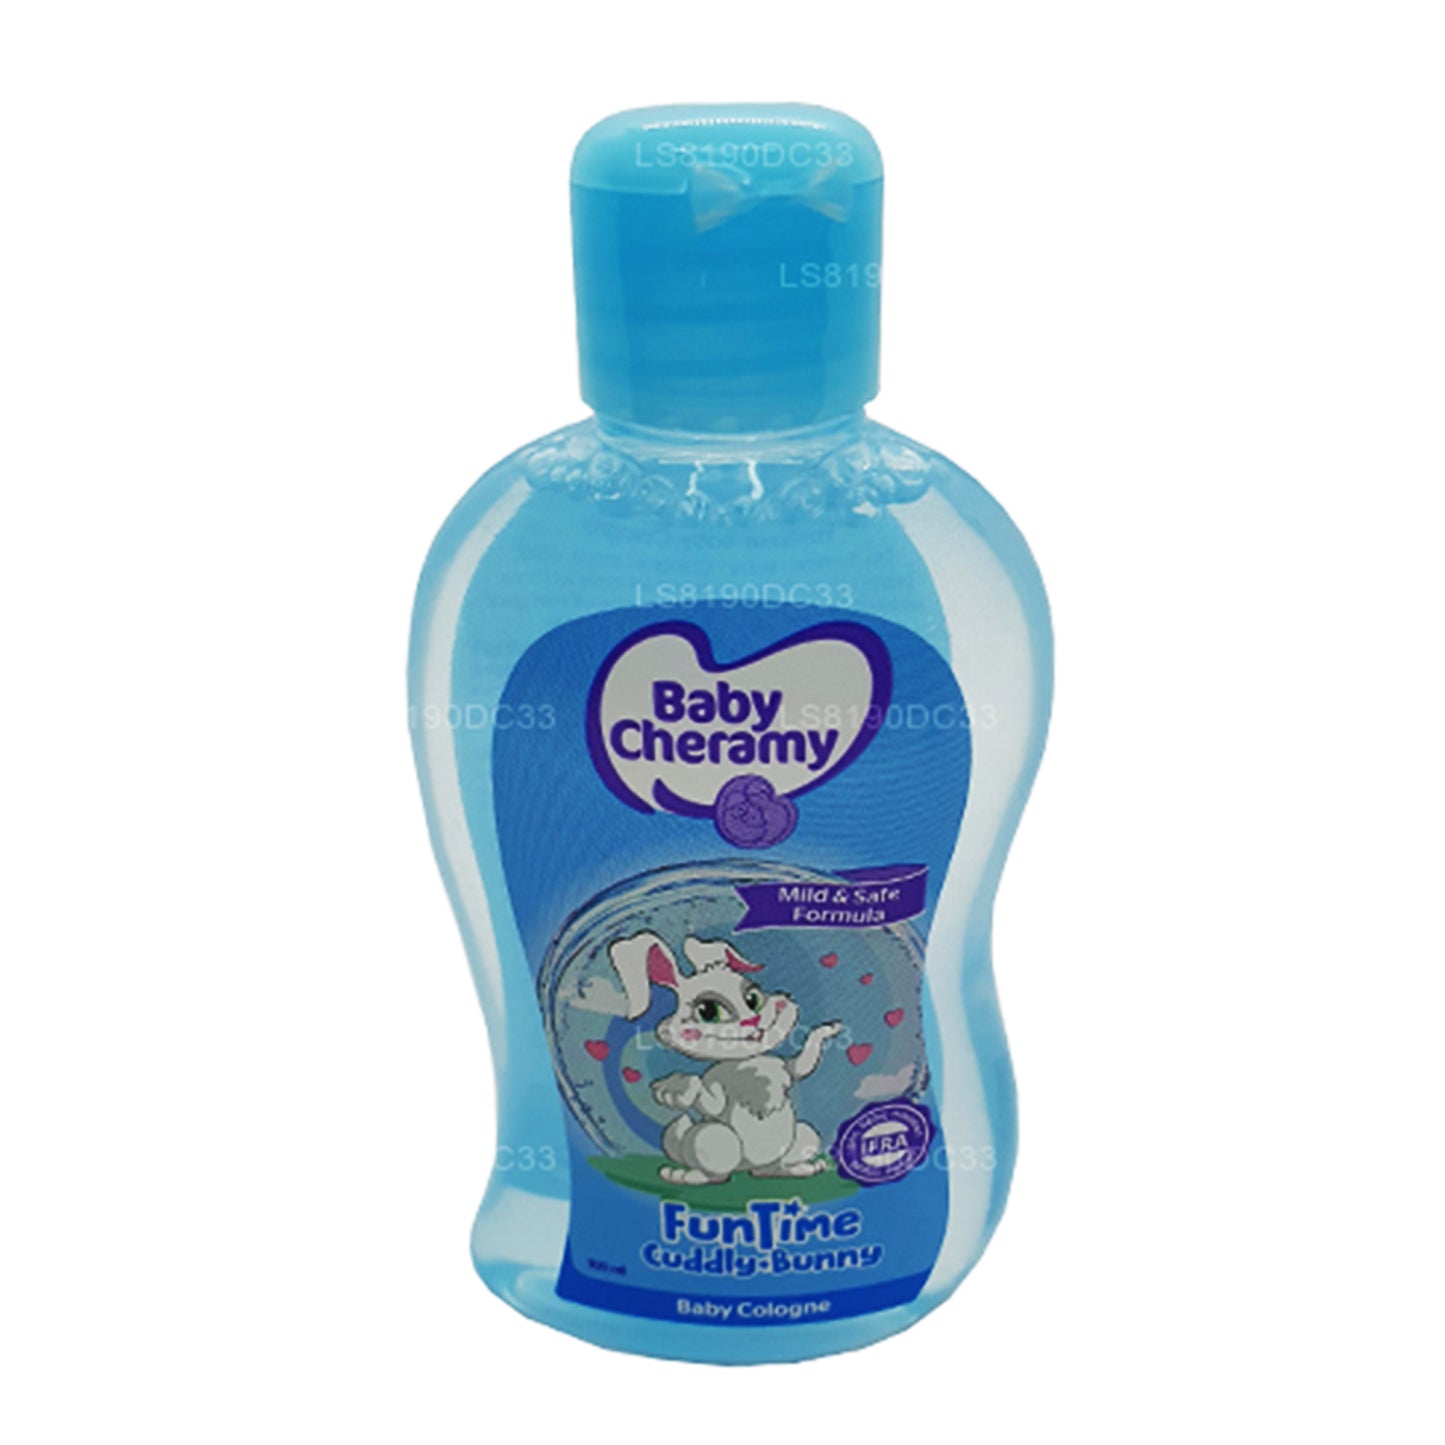 Baby Cheramy Fun Time Cuddly Bunny (eau de Cologne pour bébé) 100 ml